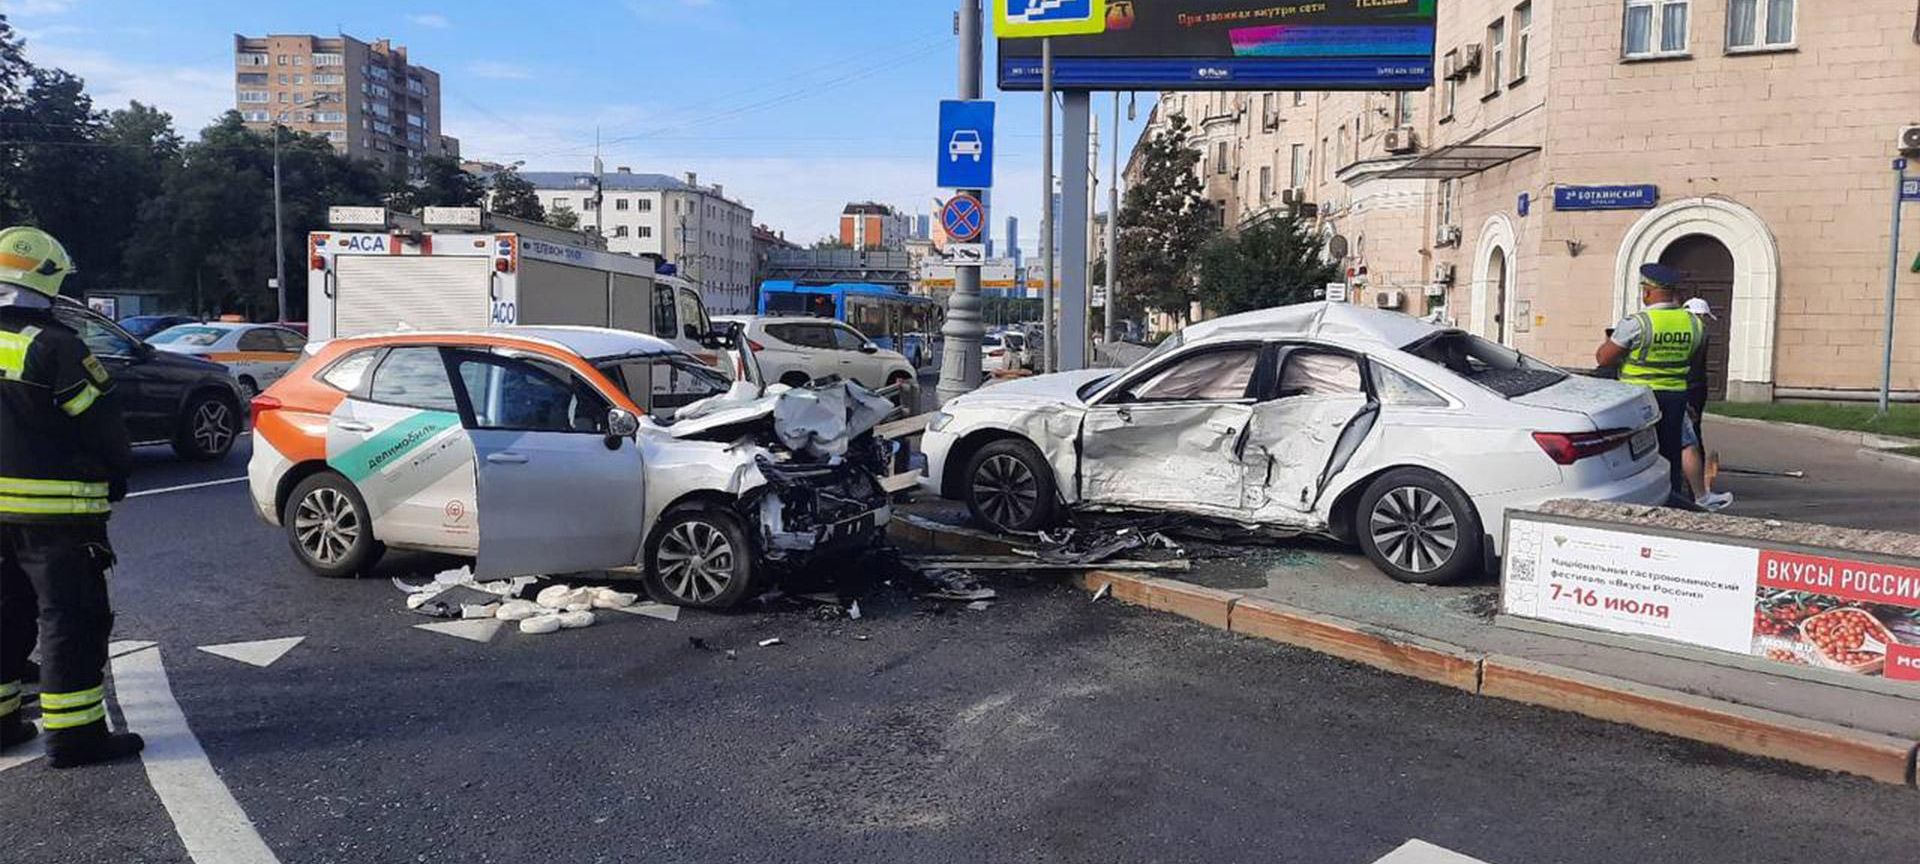 В Хорошевском районе Москвы авто каршеринга влетело в иномарку, погиб мужчина